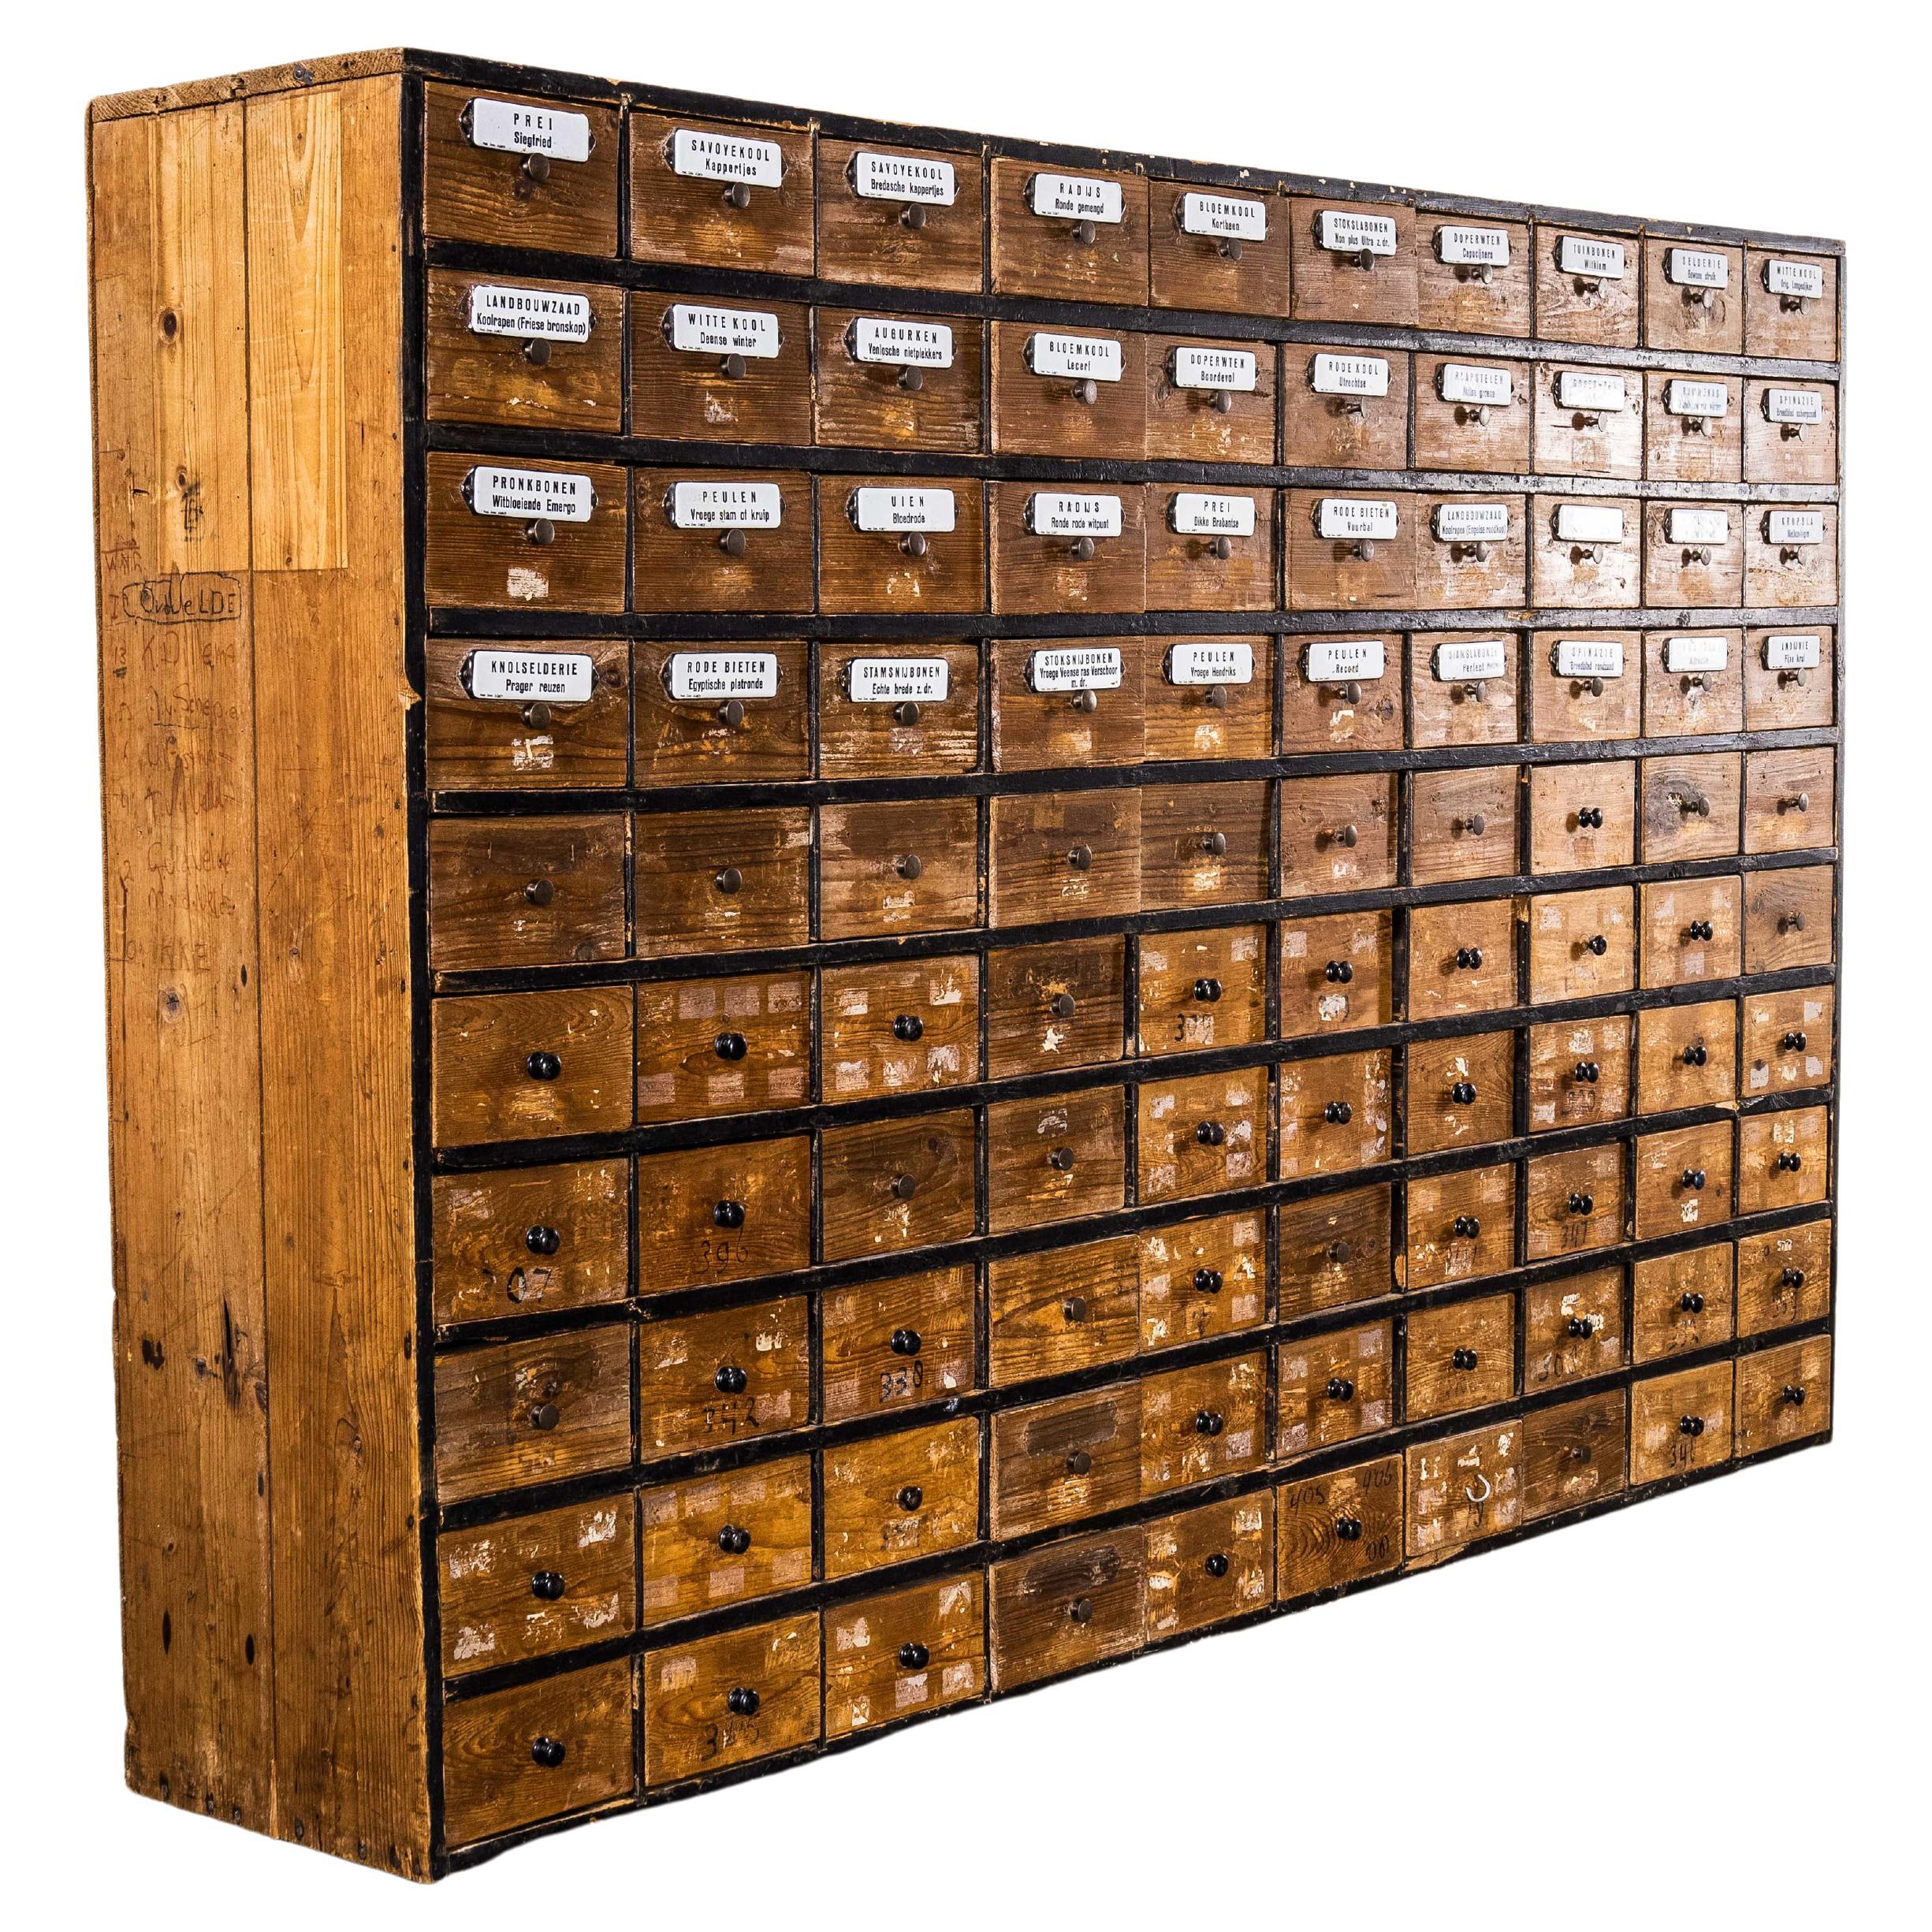 Sehr große holländische Schubladenbank aus den 1950er Jahren, einehundert Schubladen '1673'